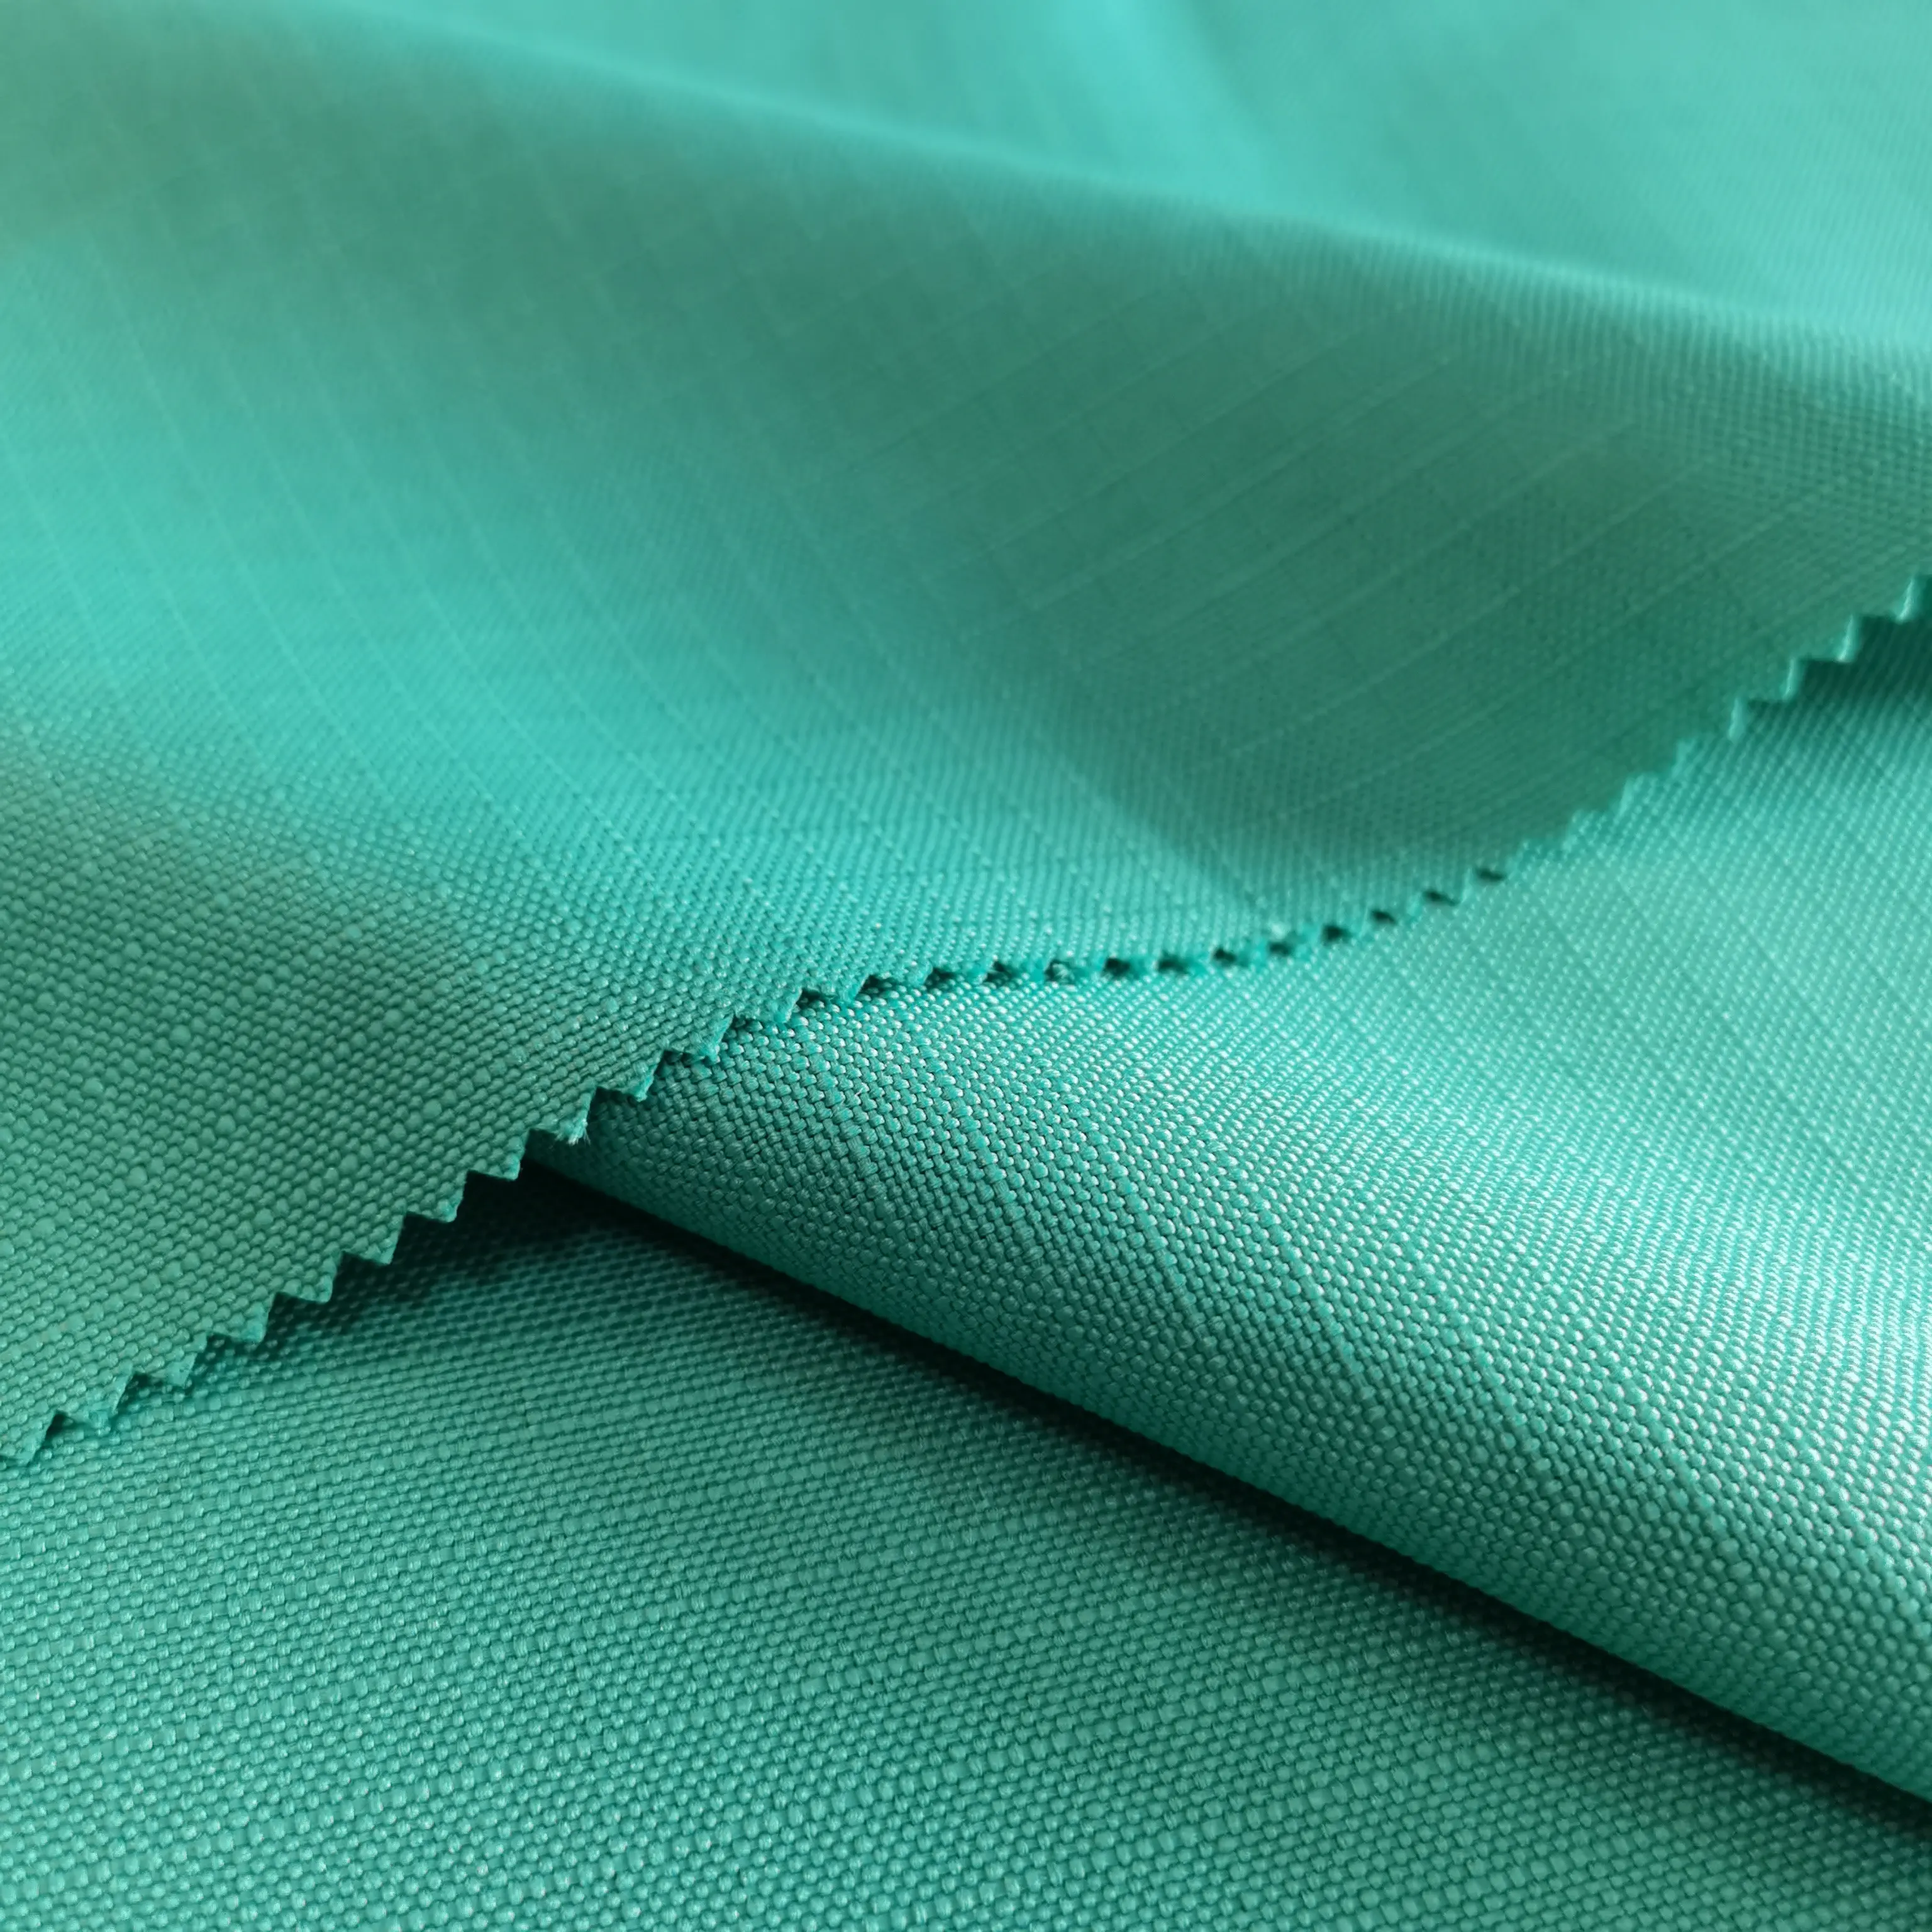 Haute qualité 100% Polyester 600D Ripstop PU enduit Oxford tissu imperméable coupe-vent pour extérieur bagages vêtements sacs/tentes